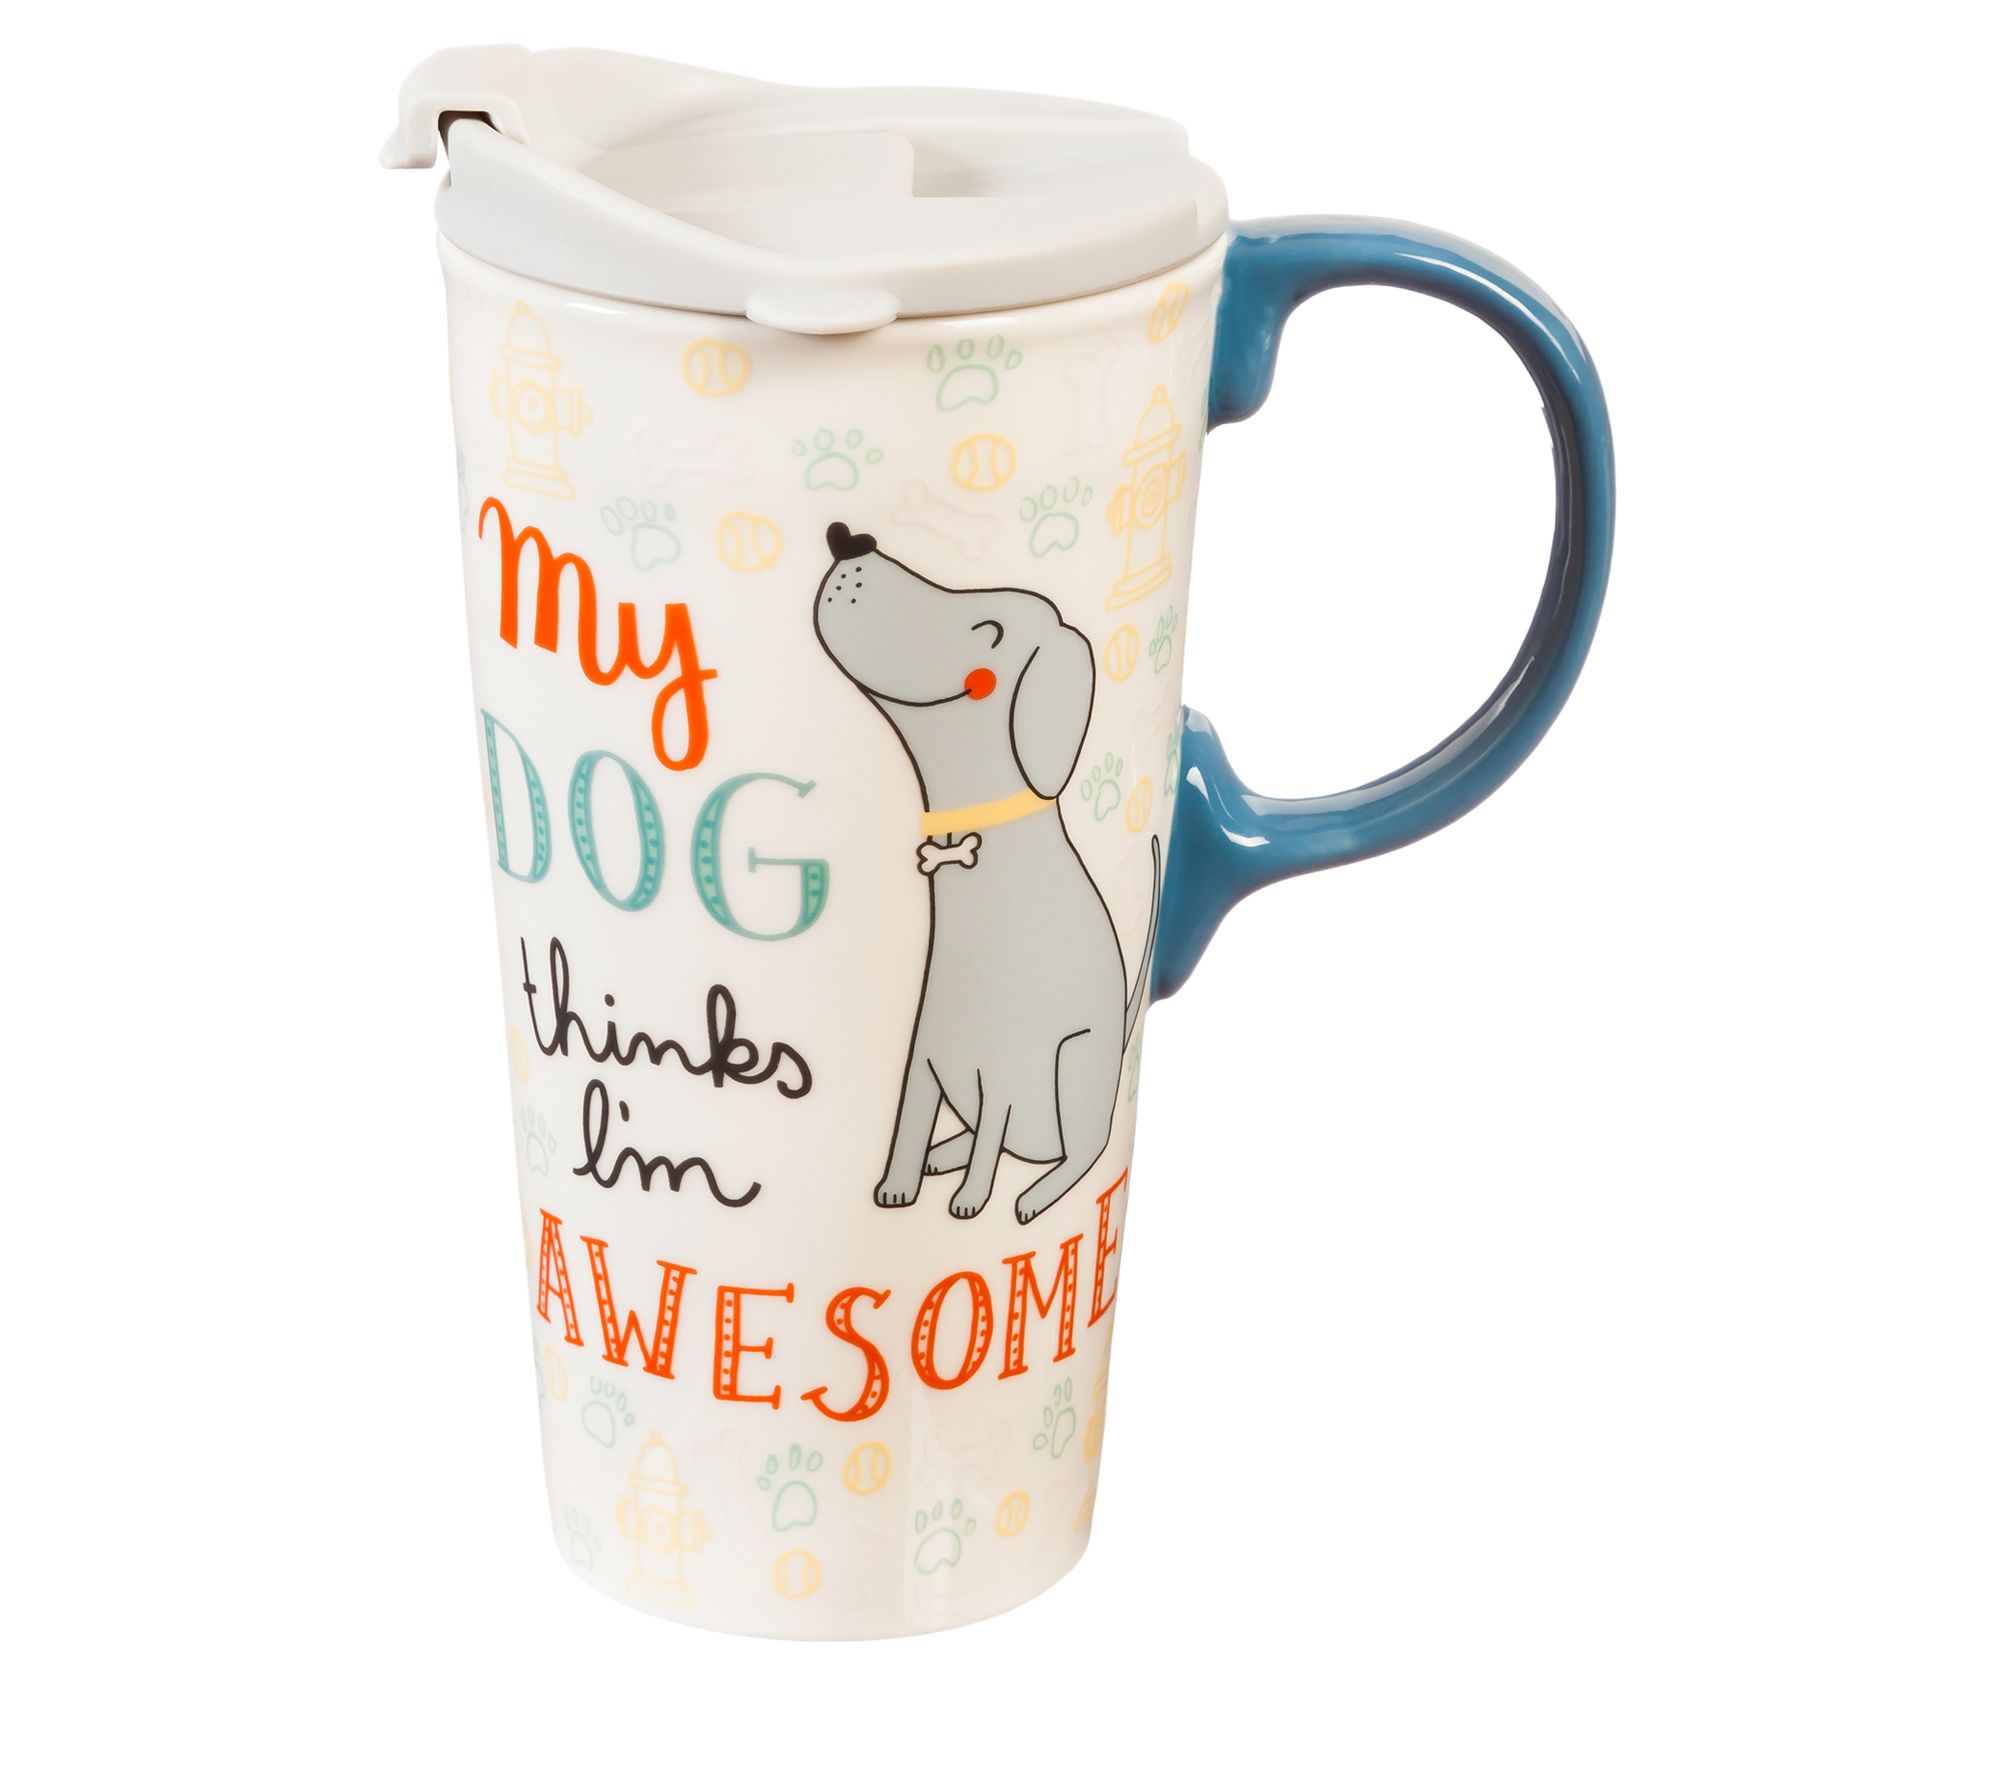 My Dog Thinks I'm Awesome Ceramic Travel Mug